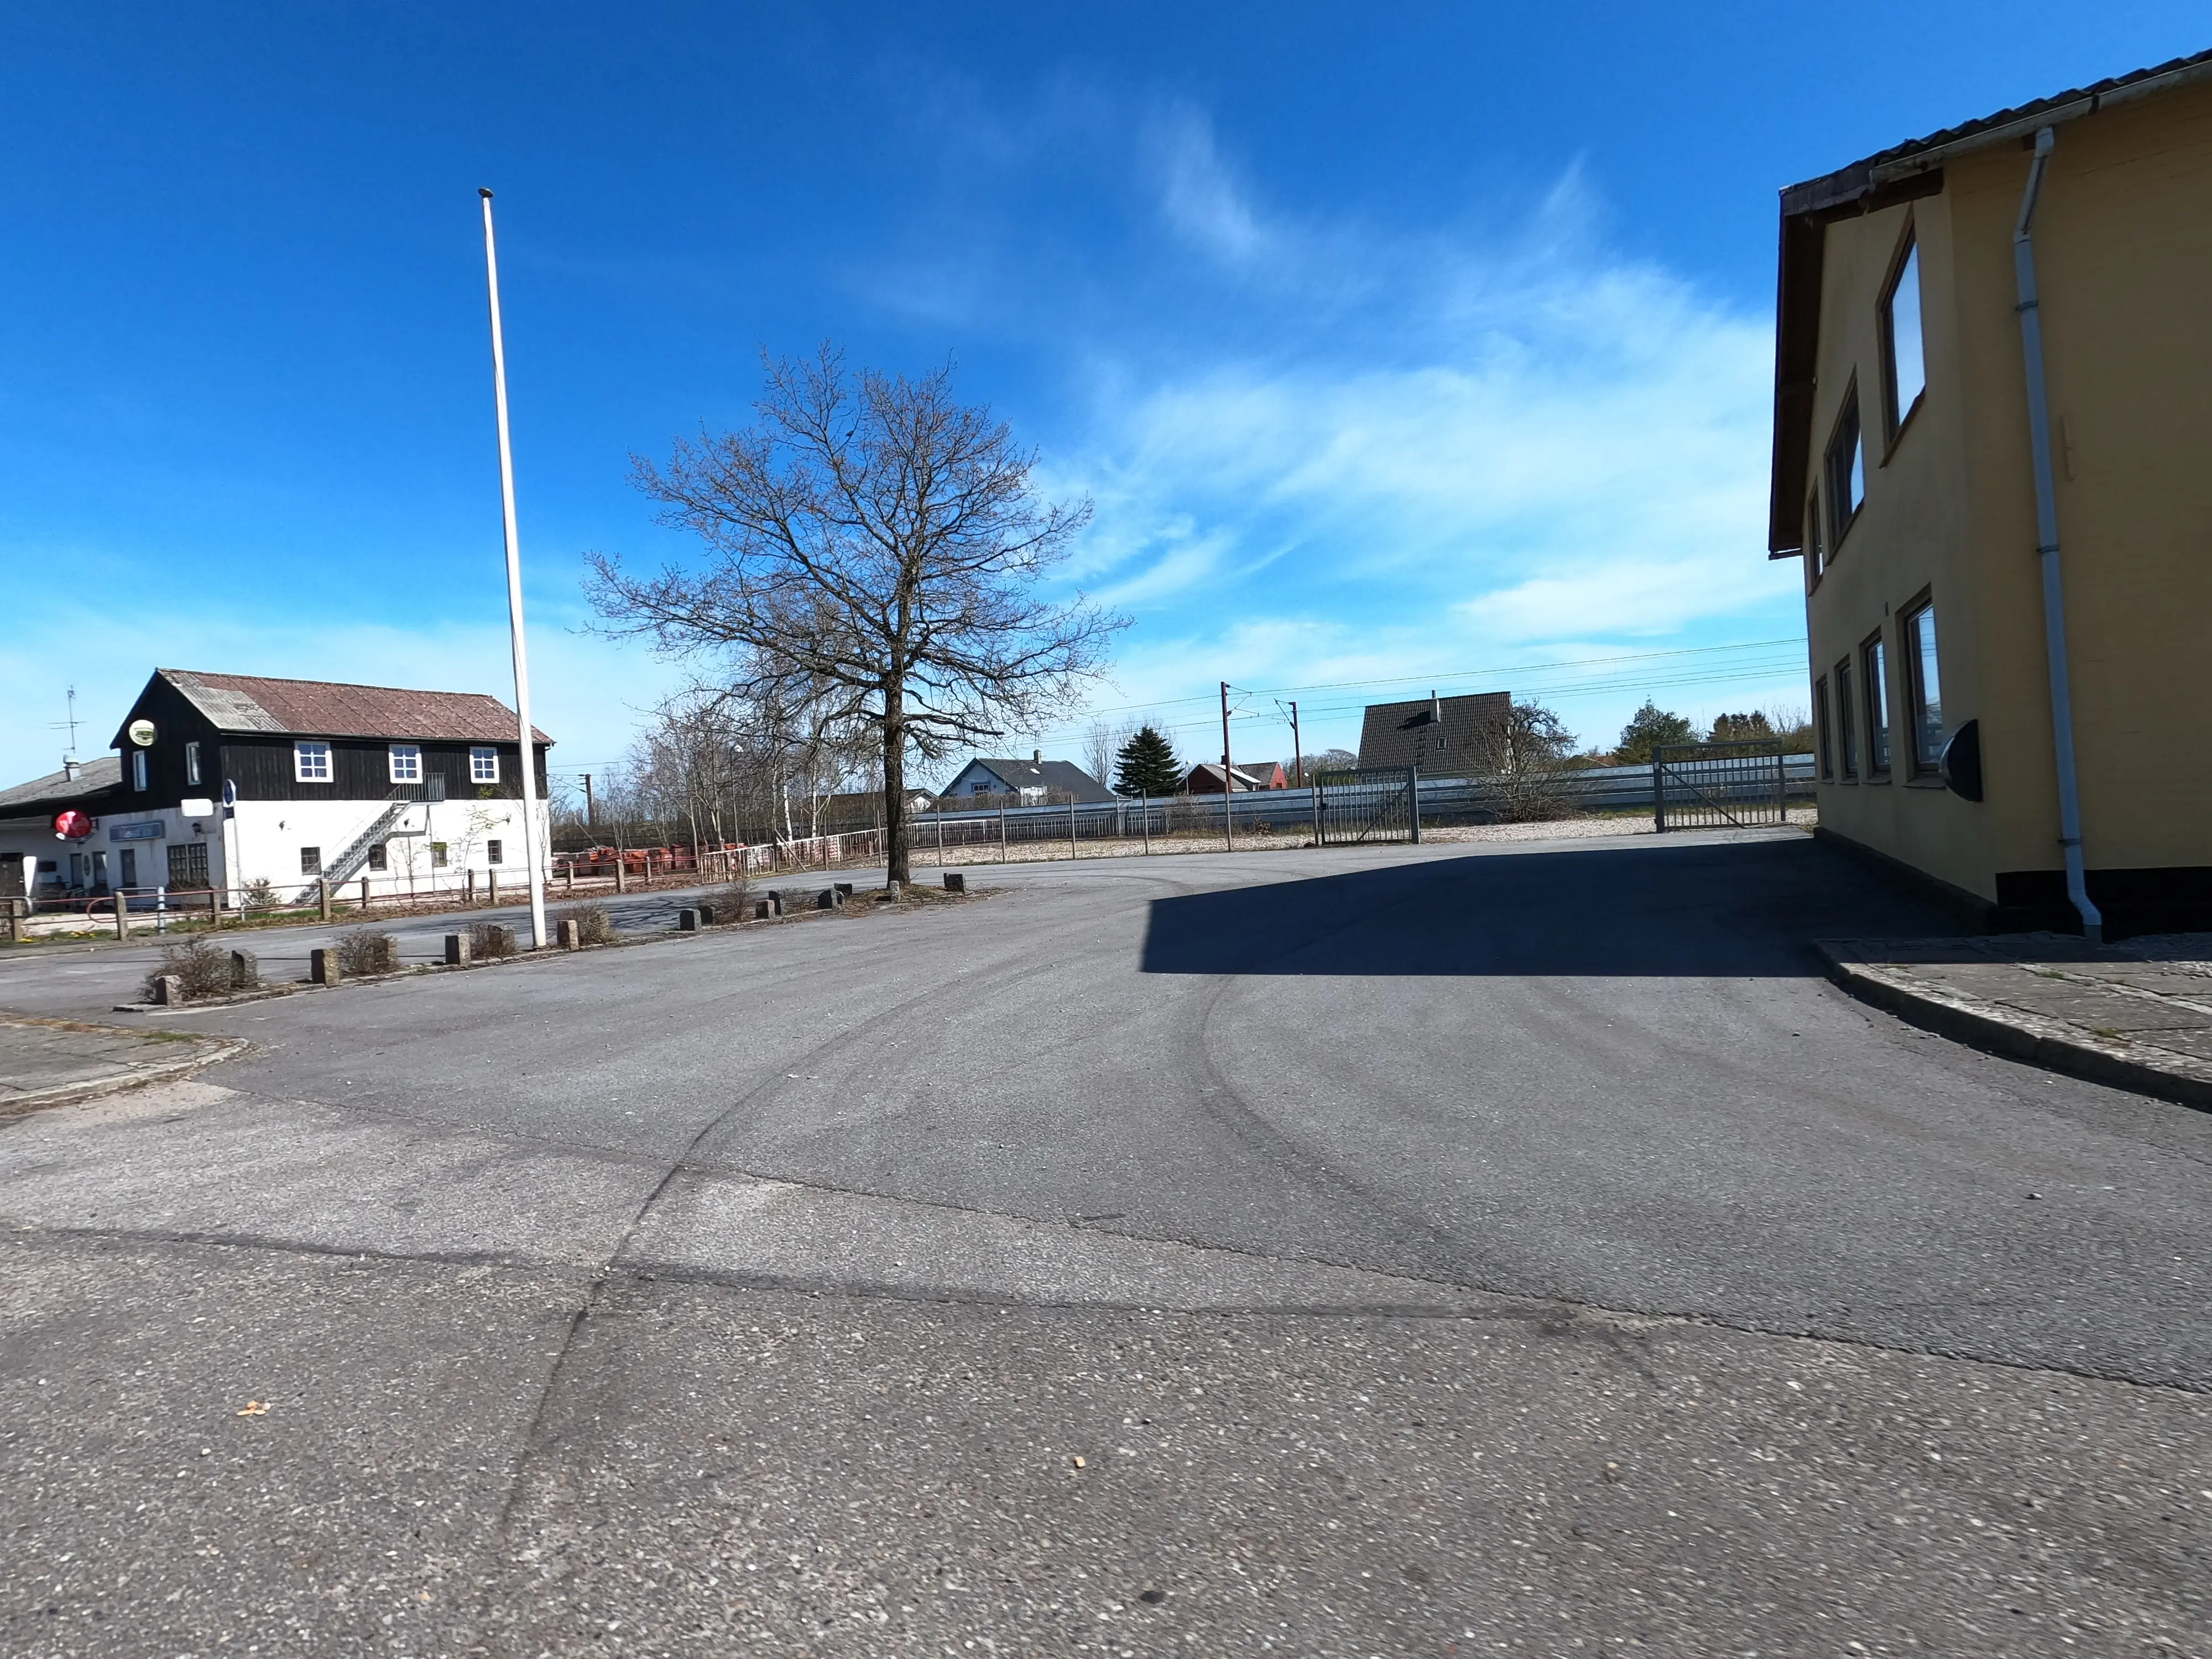 Billede af Hovslund Stationsby Krydsningsstation, som er nedrevet, men den har ligget her.